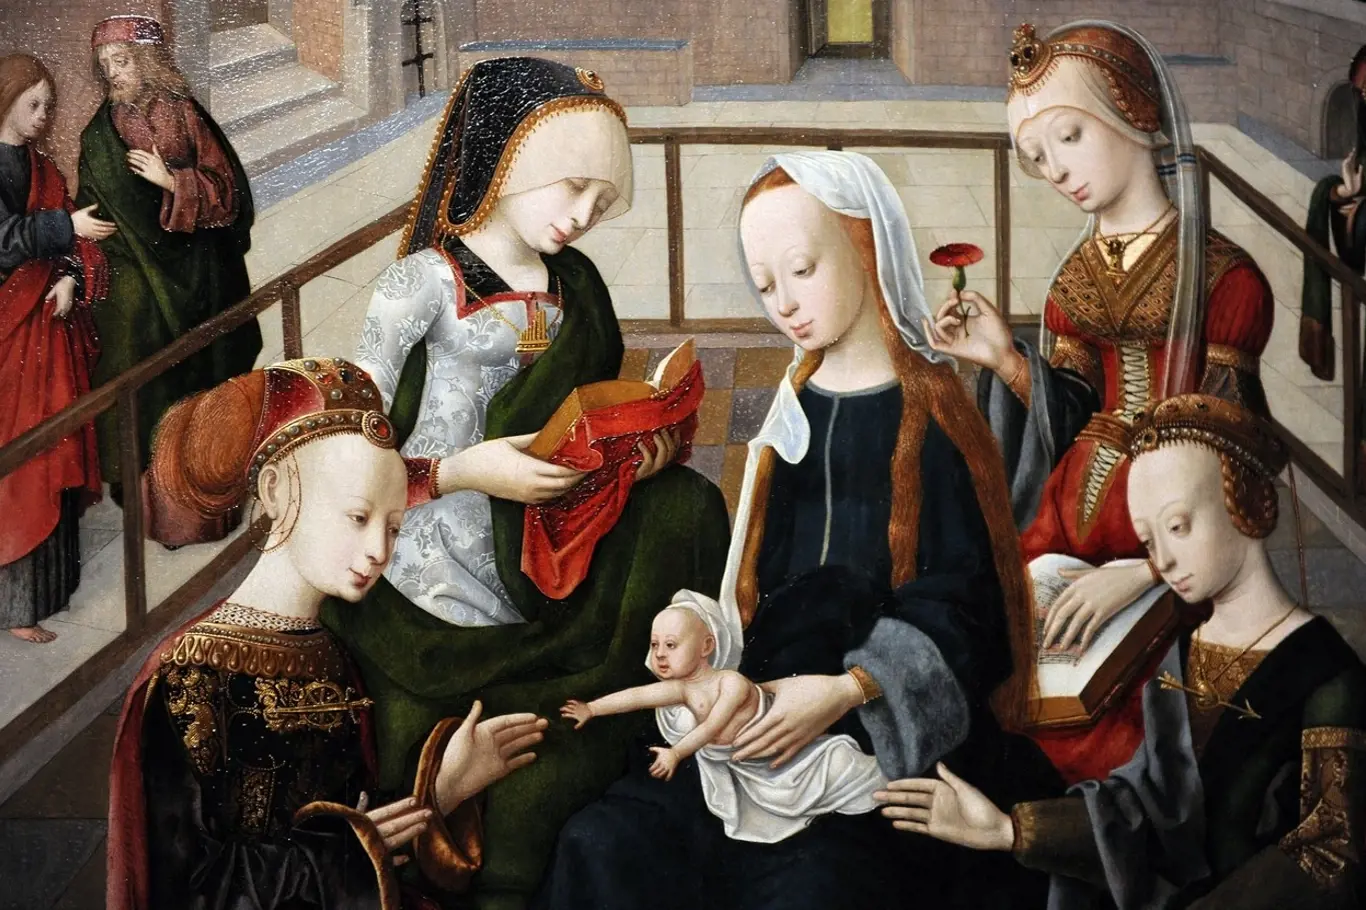 Středověké ženy byly vedeny k pokoře a smířlivosti.